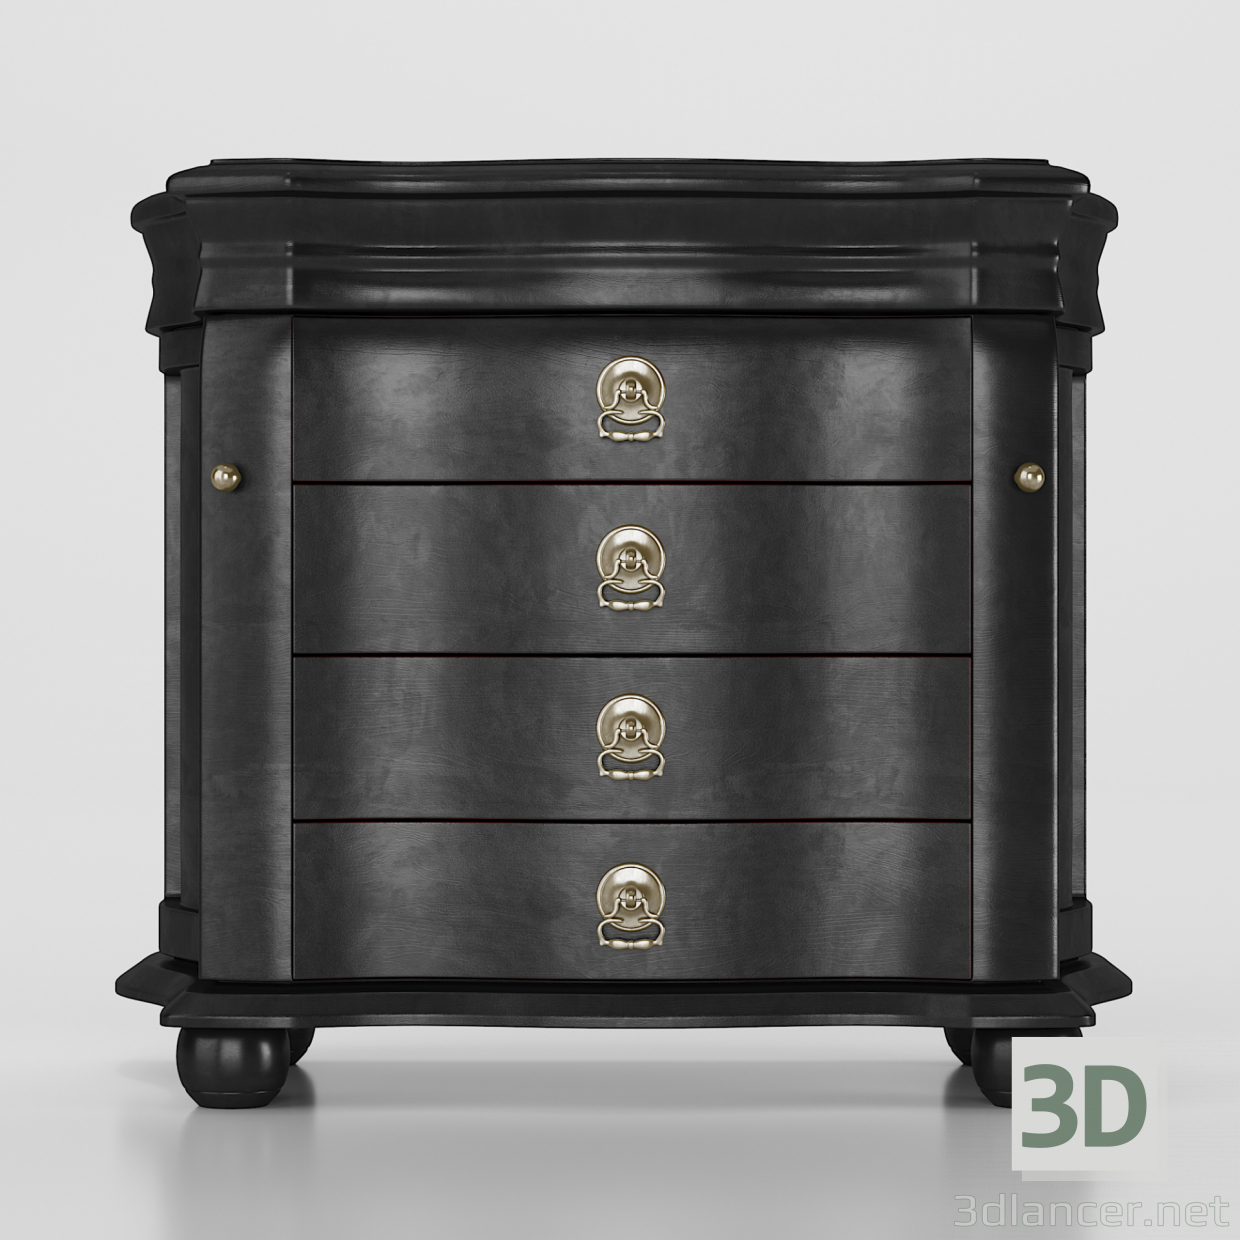 modèle 3D de Coffret Darby Home Co Box DRBH4011 acheter - rendu